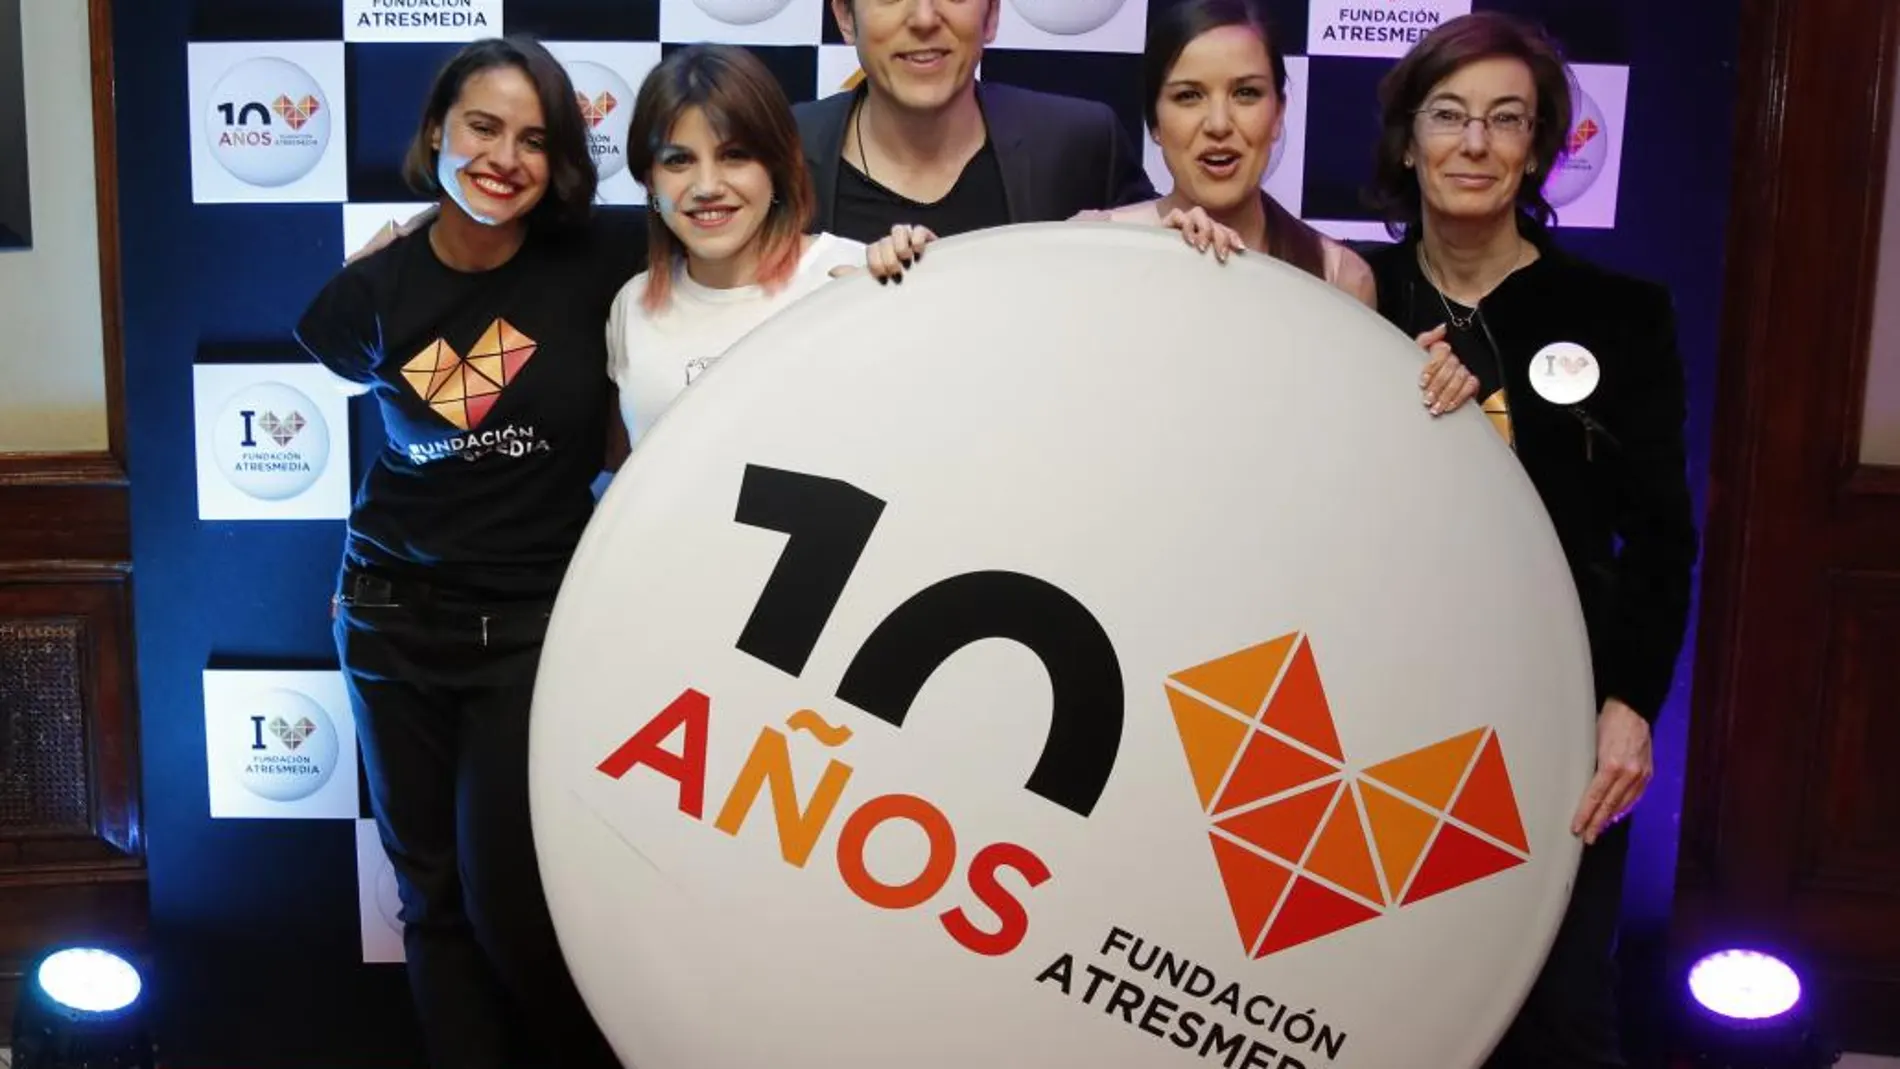 De izquierda a derecha, Lary León, coordinadora de Proyectos y Contenidos de la Fundación Atresmedia, Angy, Manel Fuentes, Roko, y Carmen Bieger, directora de la Fundación Atresmedia